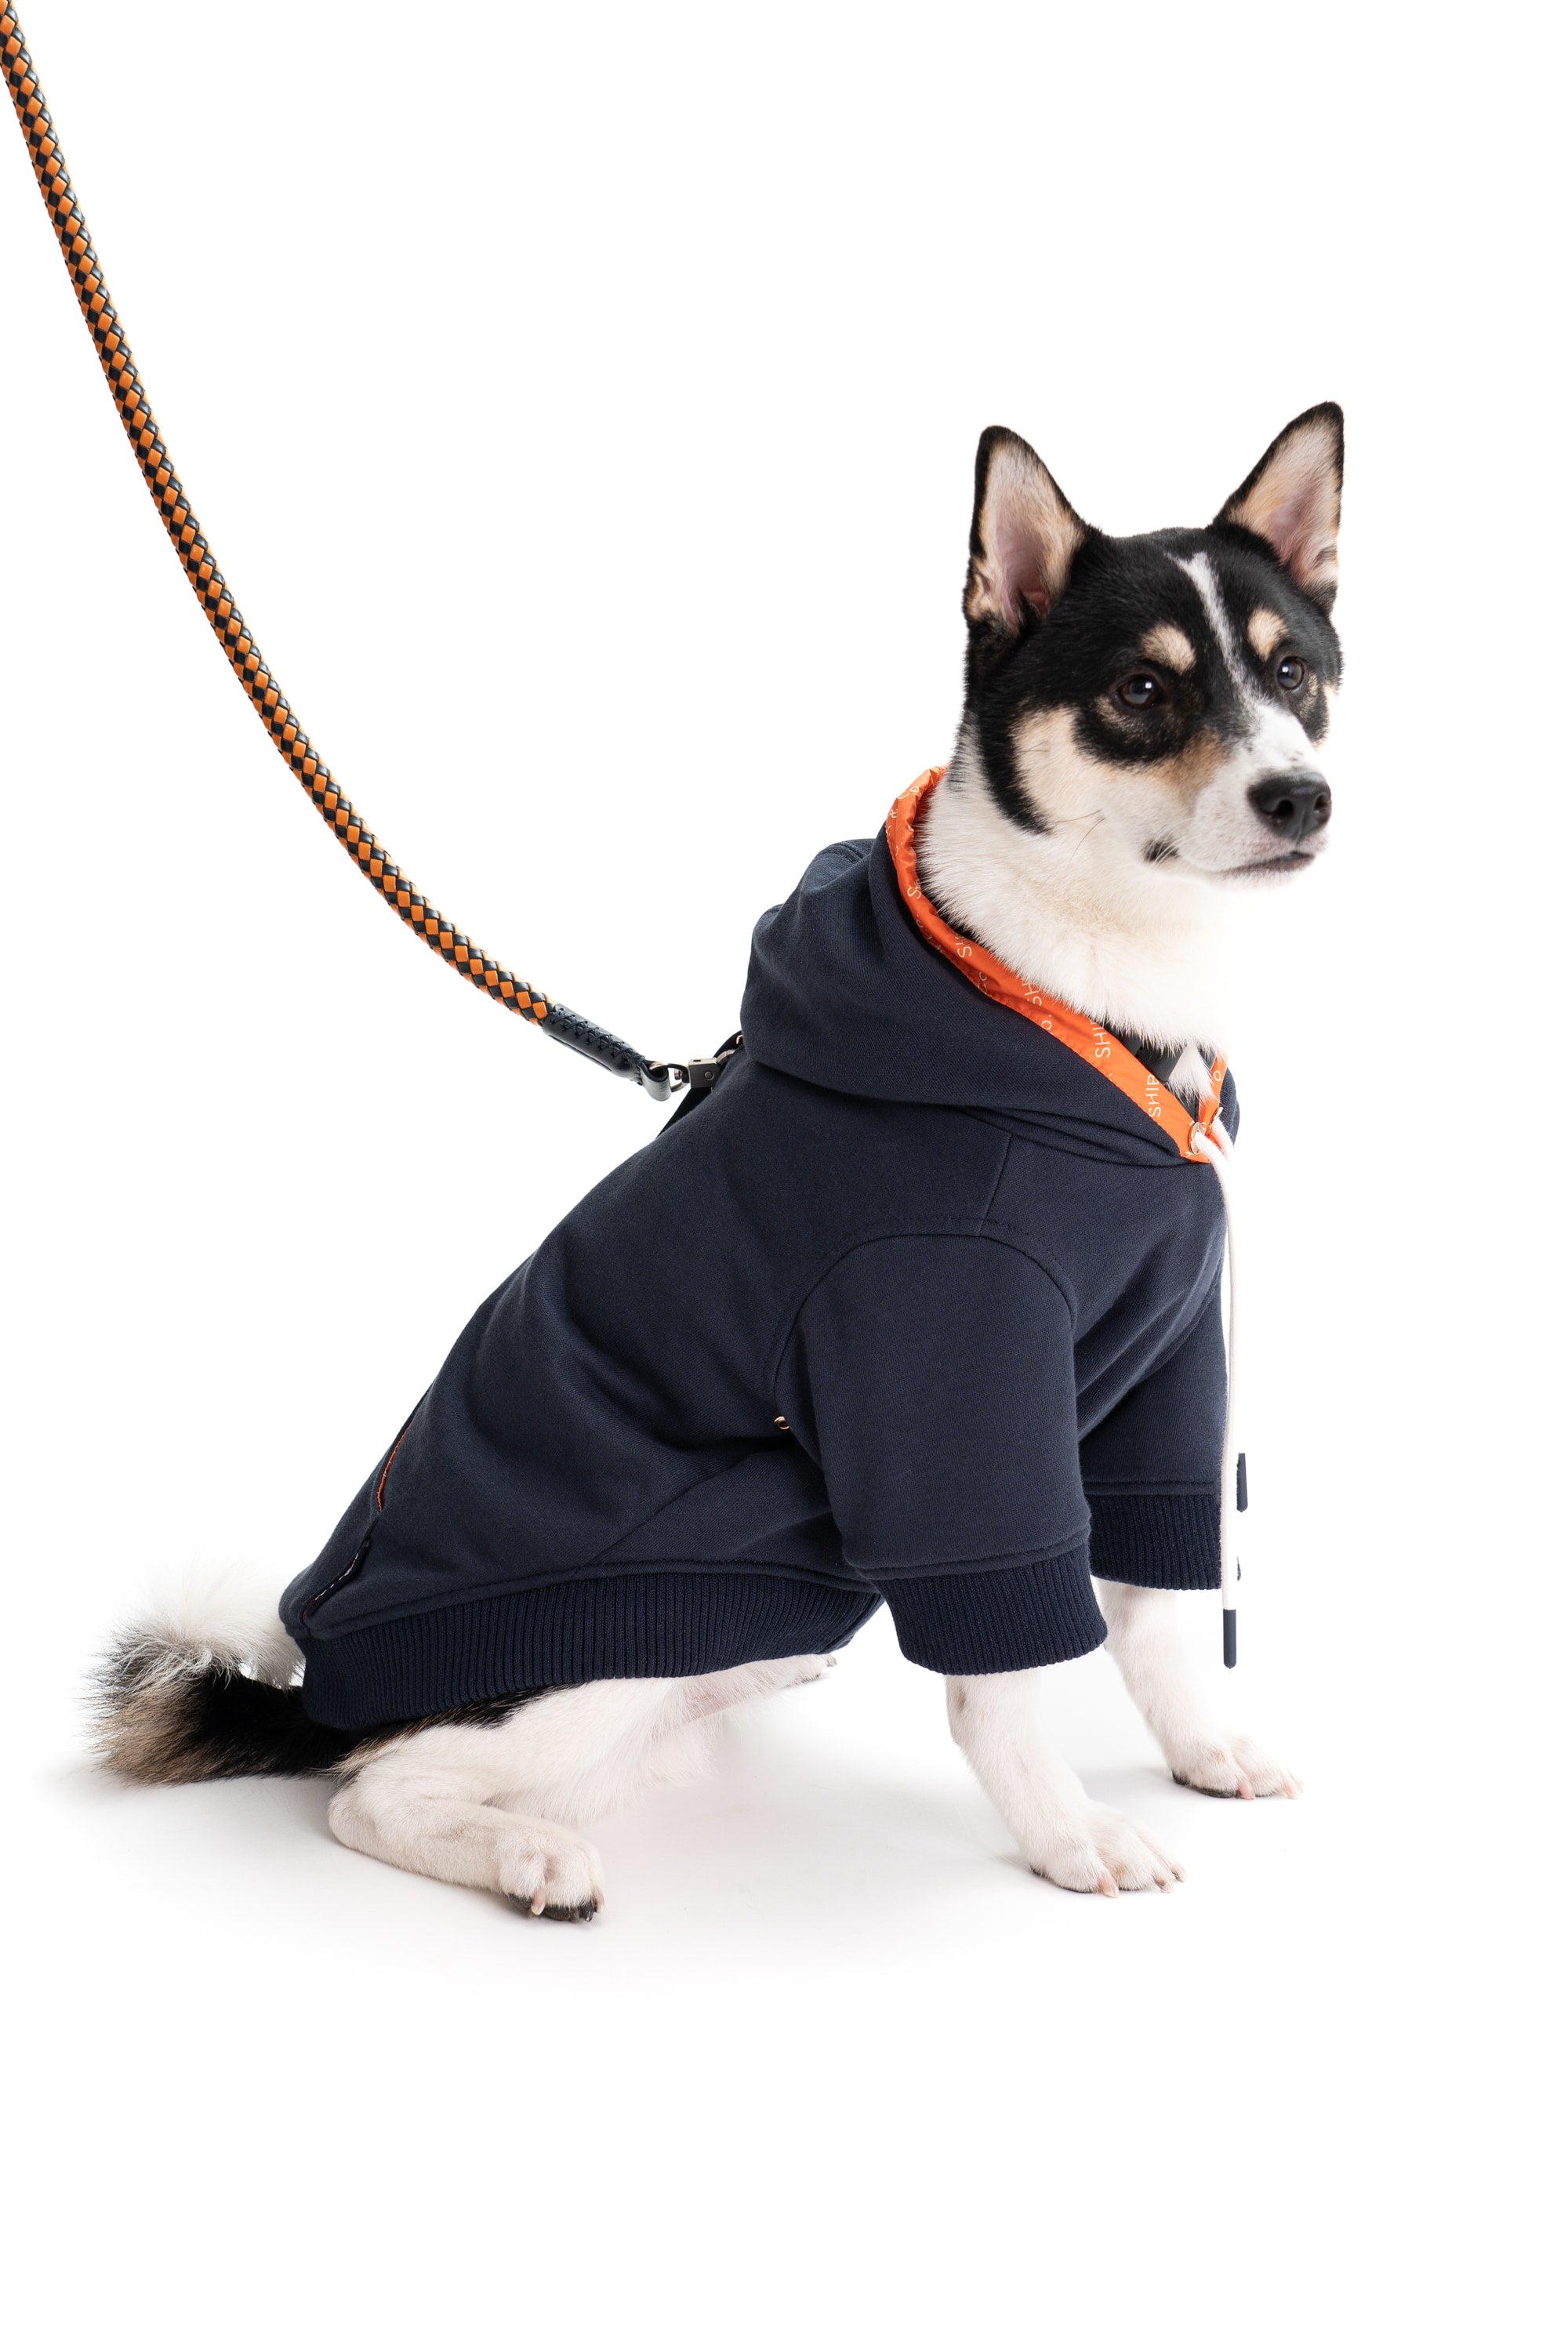 Reve Dog Hoodie In Orange - Waterproof & Pet Hair-resistant, SHIBA & Co.